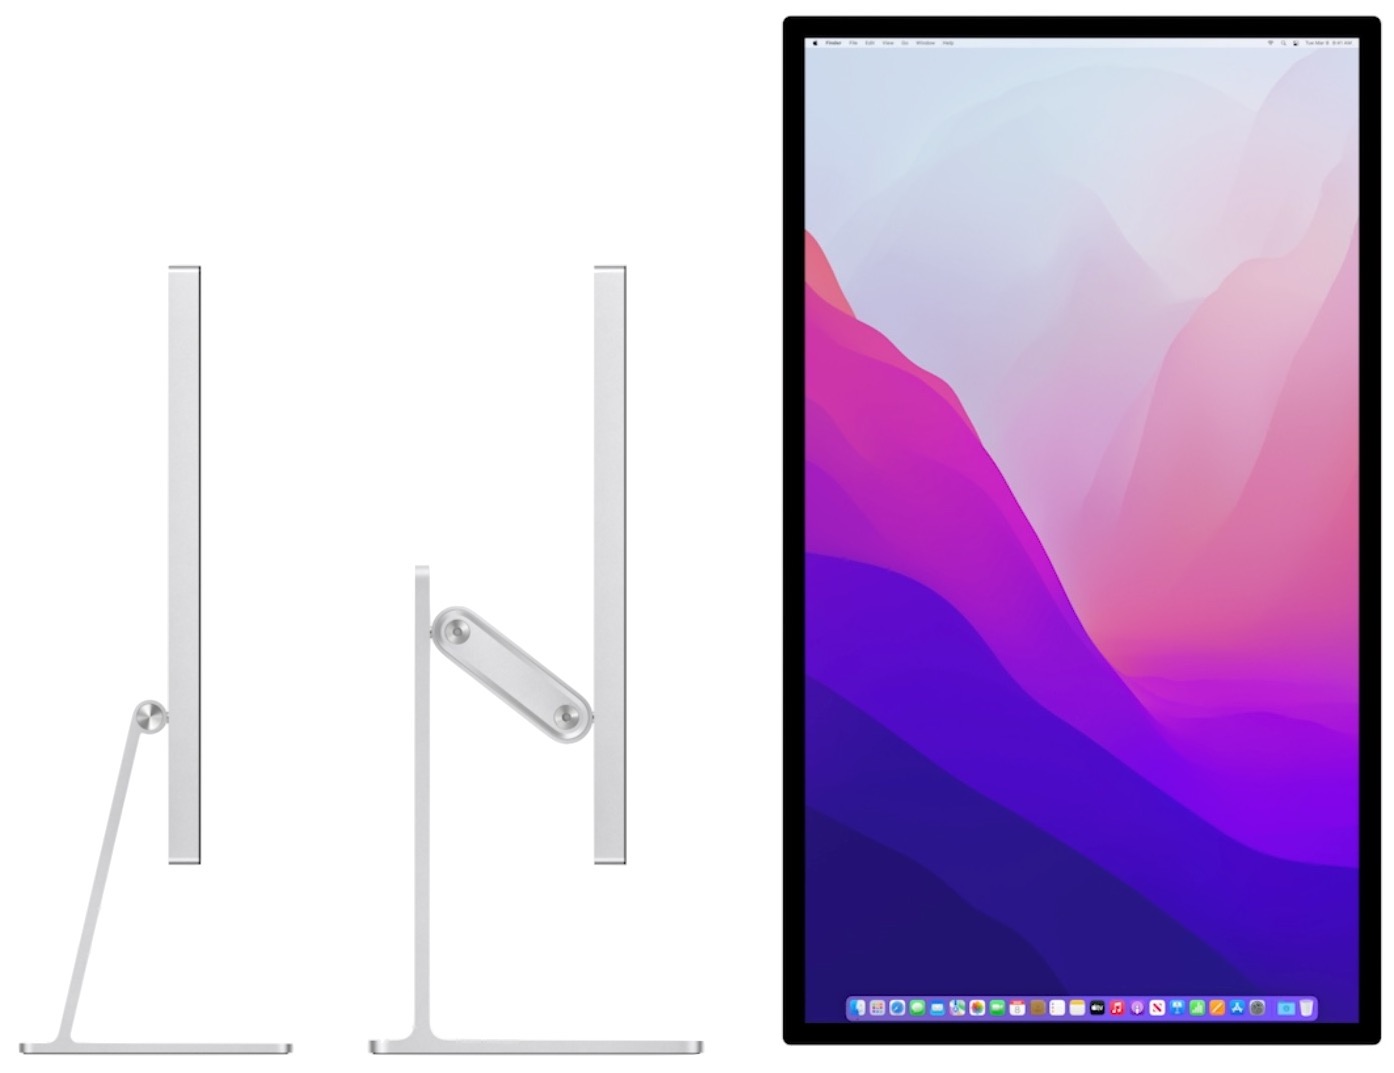 New Mac Studio and TidBITS Buying Mac Calculus - Display Studio Change